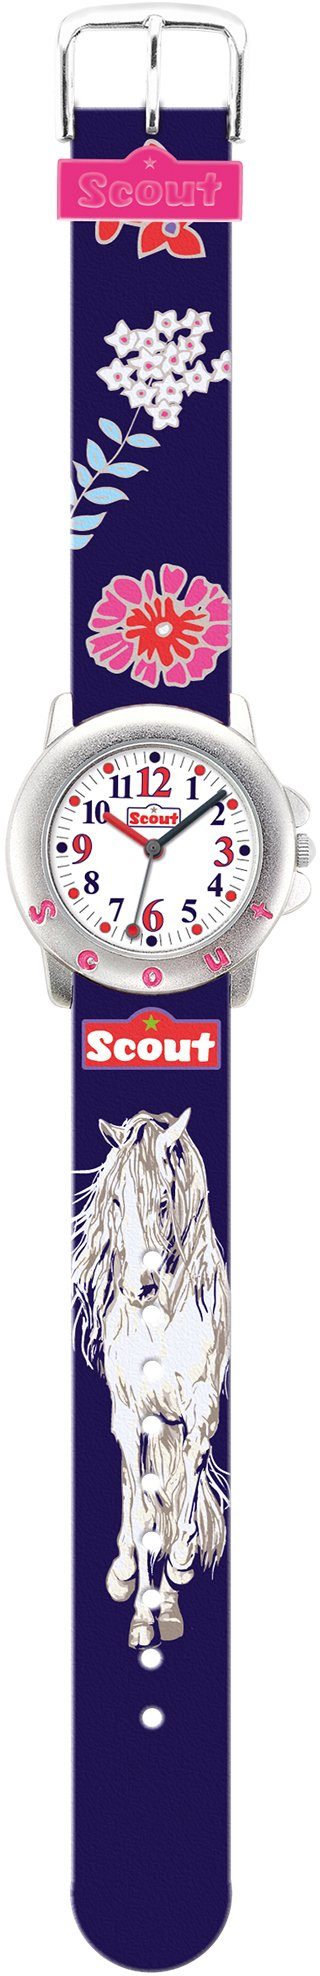 Scout Quarzuhr auch Kids, 280393006, mit Star als Geschenk Pferdemotiv, Pferdeuhr, ideal